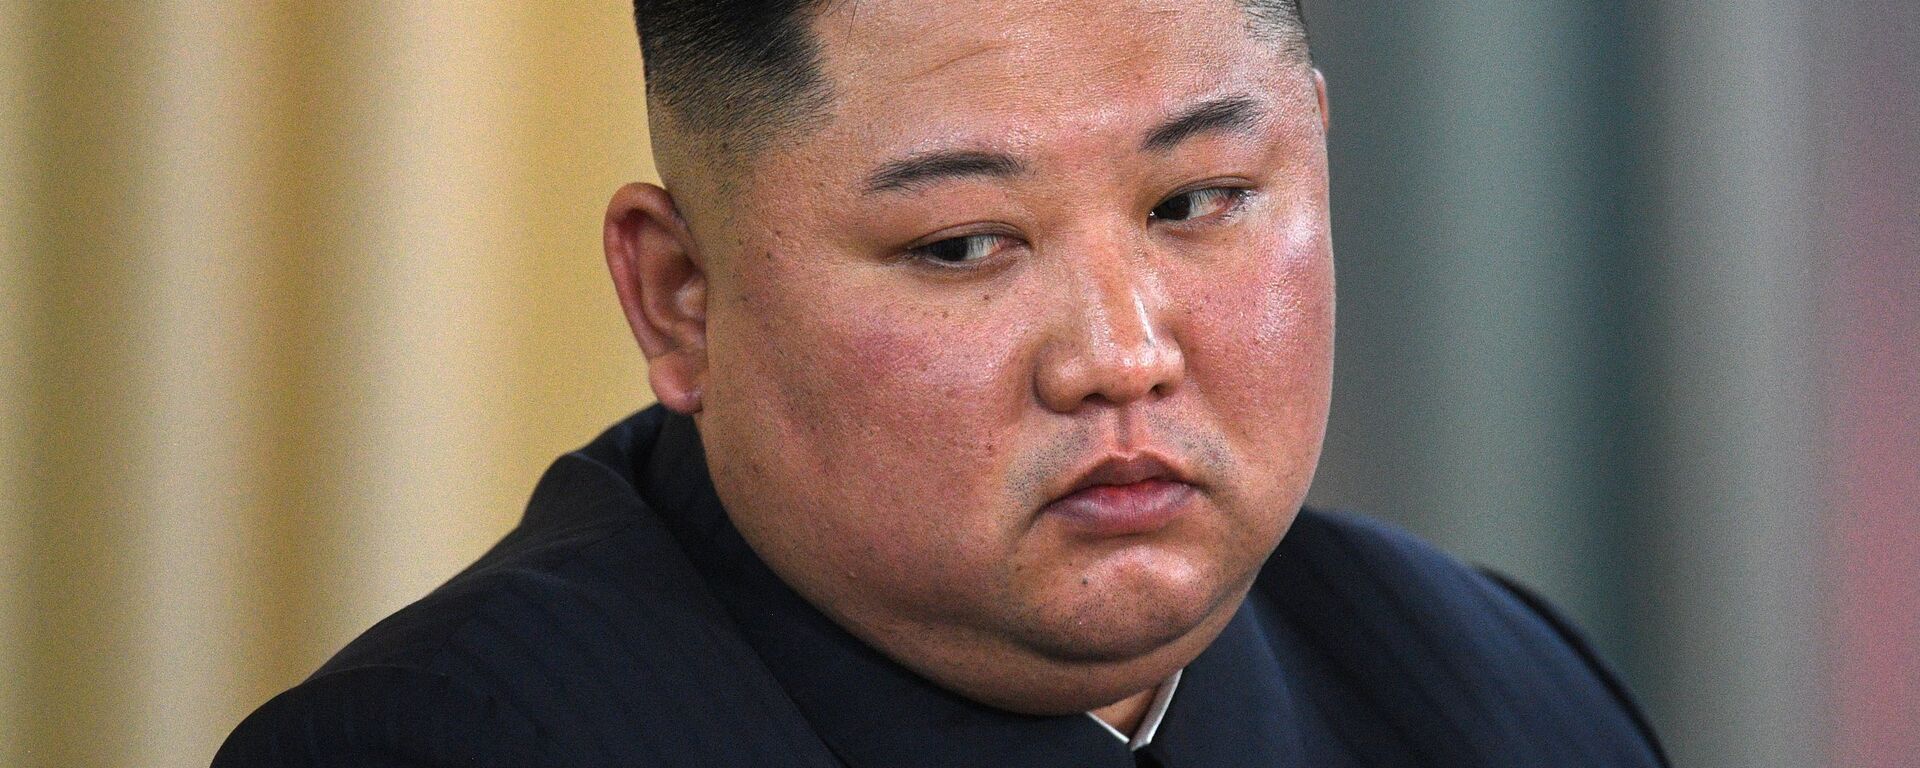 Kim Jong-un, el líder de Corea del Norte - Sputnik Mundo, 1920, 12.02.2021